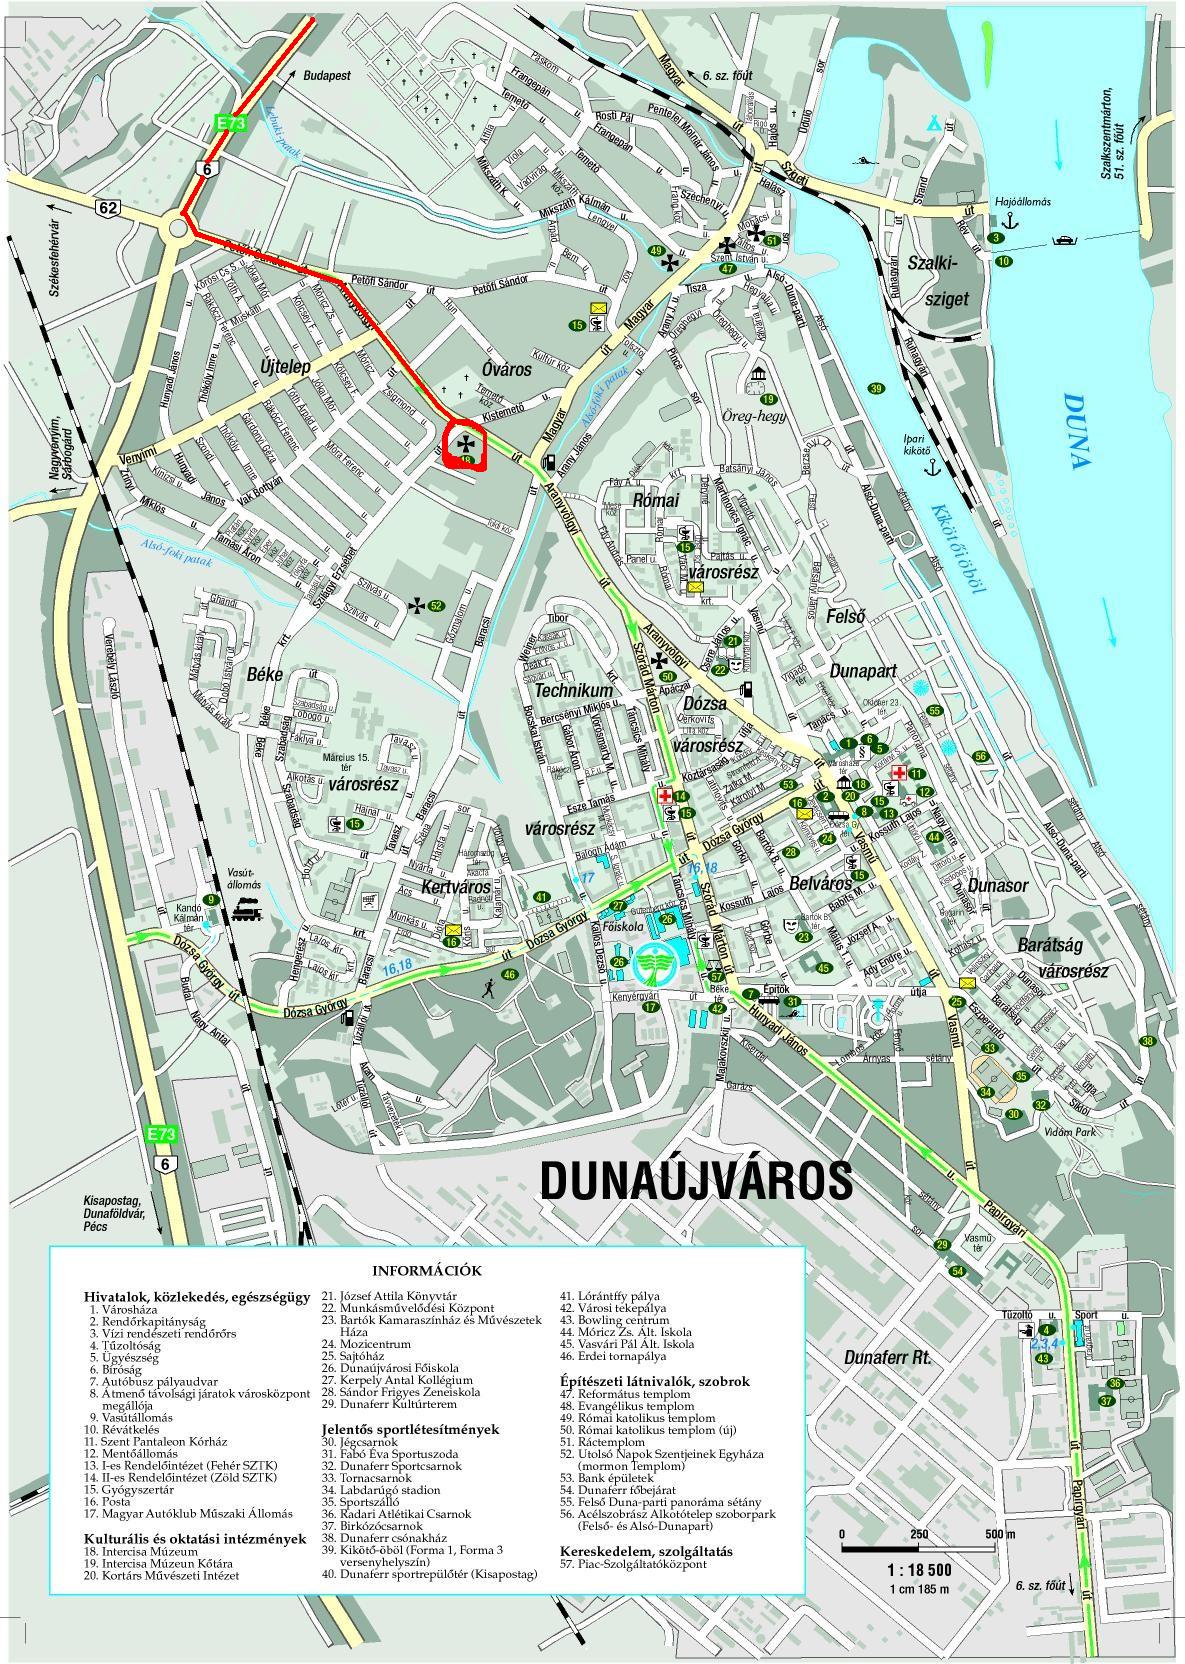 magyarország térkép rácalmás Dunaújváros Kisapostagi Társult Evangélikus Egyházközség  magyarország térkép rácalmás